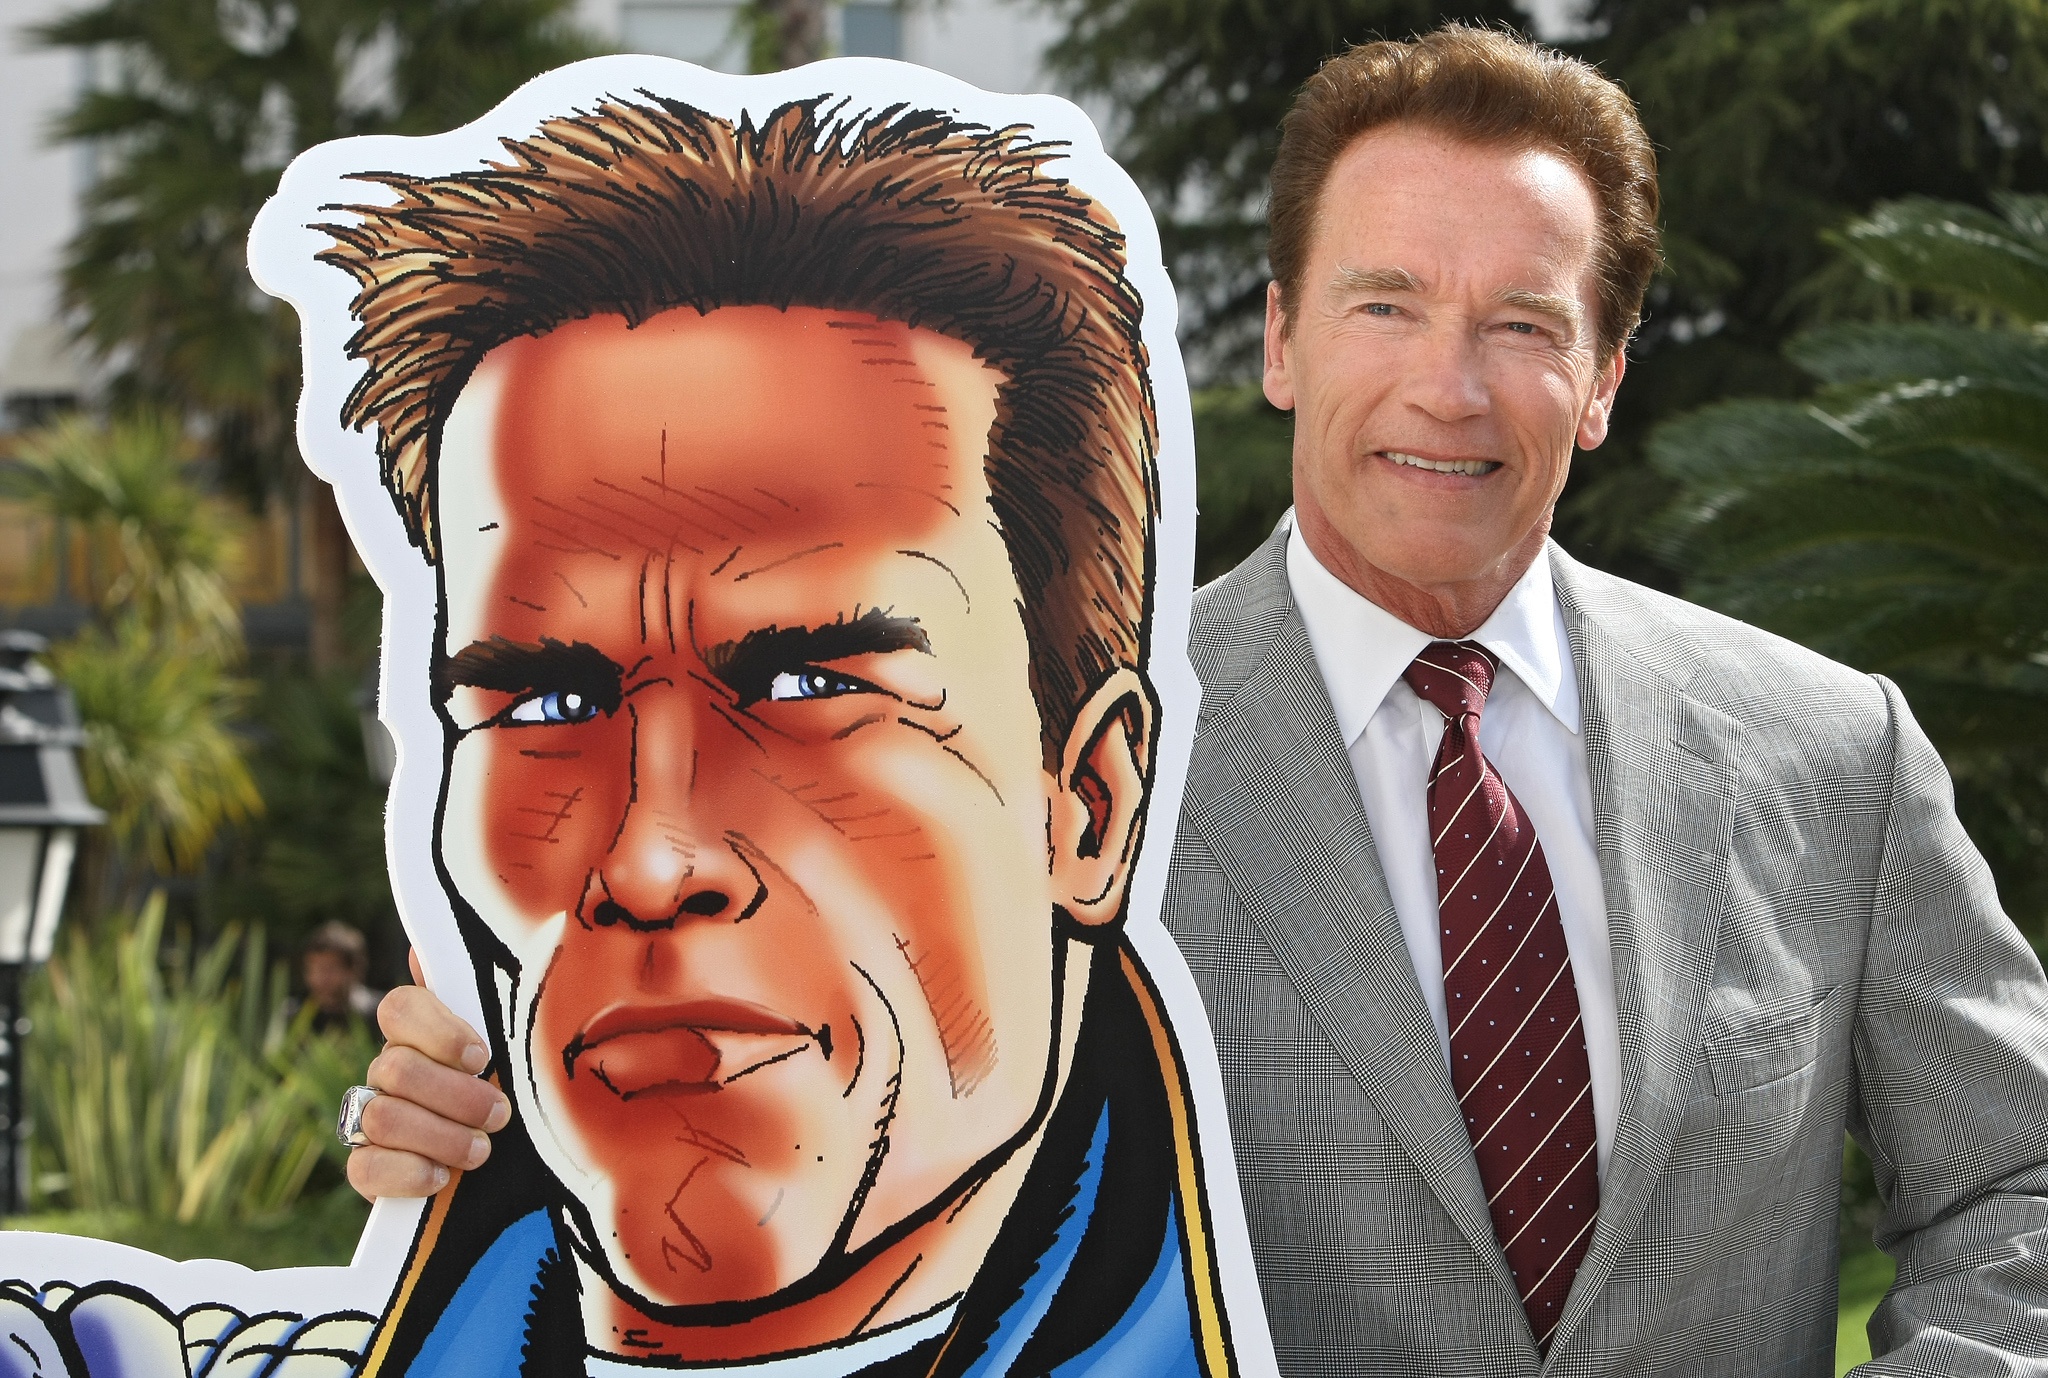 Otrohet, Arnold Schwarzenegger, USA, Barn, Kalifornien, Hollywood, Terminator, Bodybuilding, skilsmässa